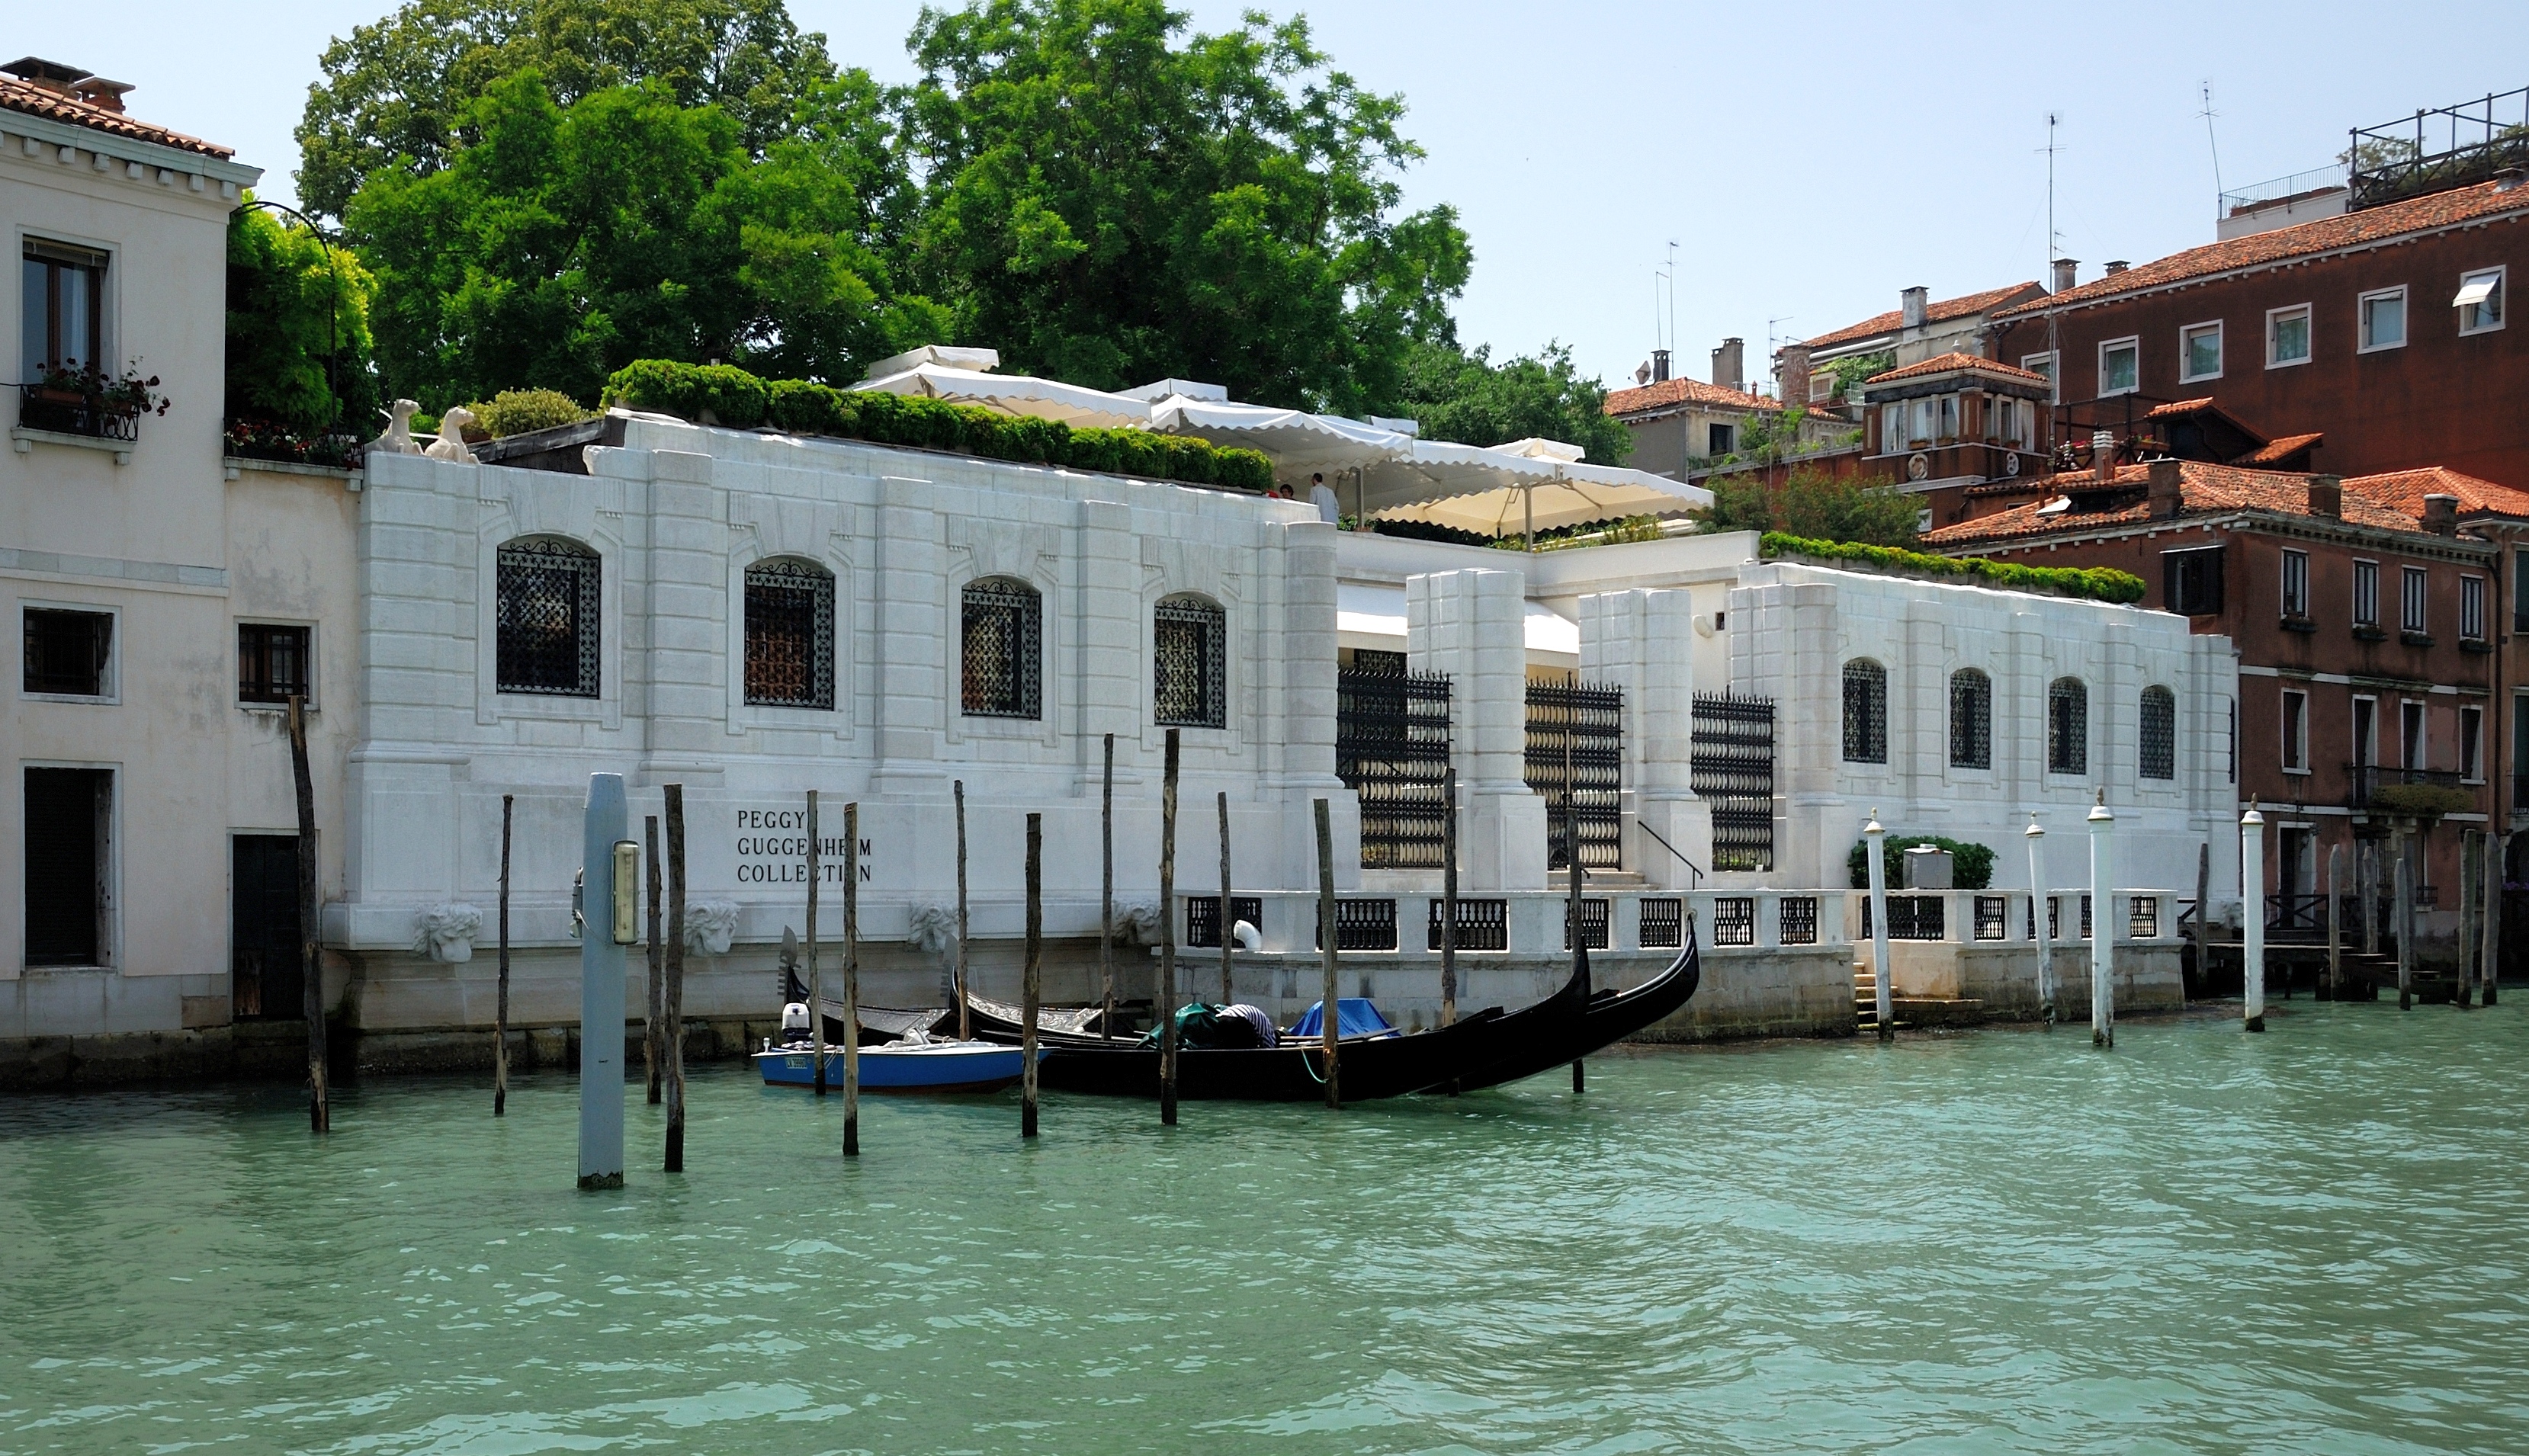 Bảo tàng Peggy Guggenheim - Peggy Guggenheim Collection - Venice - Ý